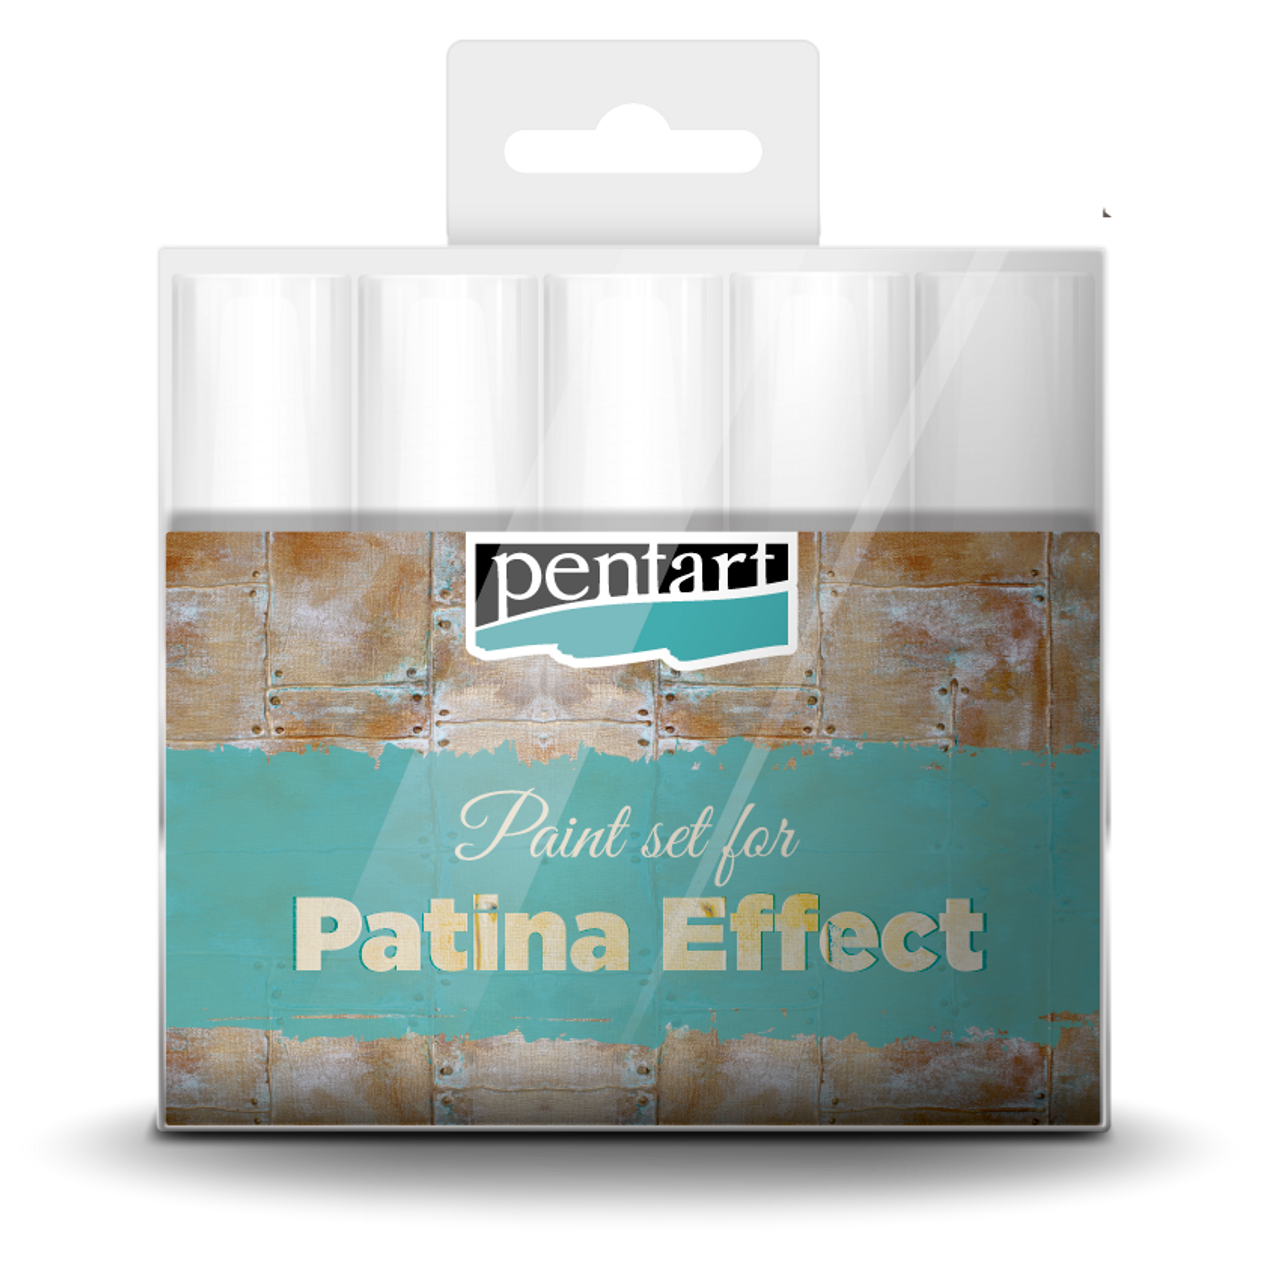 Pentart Patina Effect Set, 5pc - Decoupage Queen